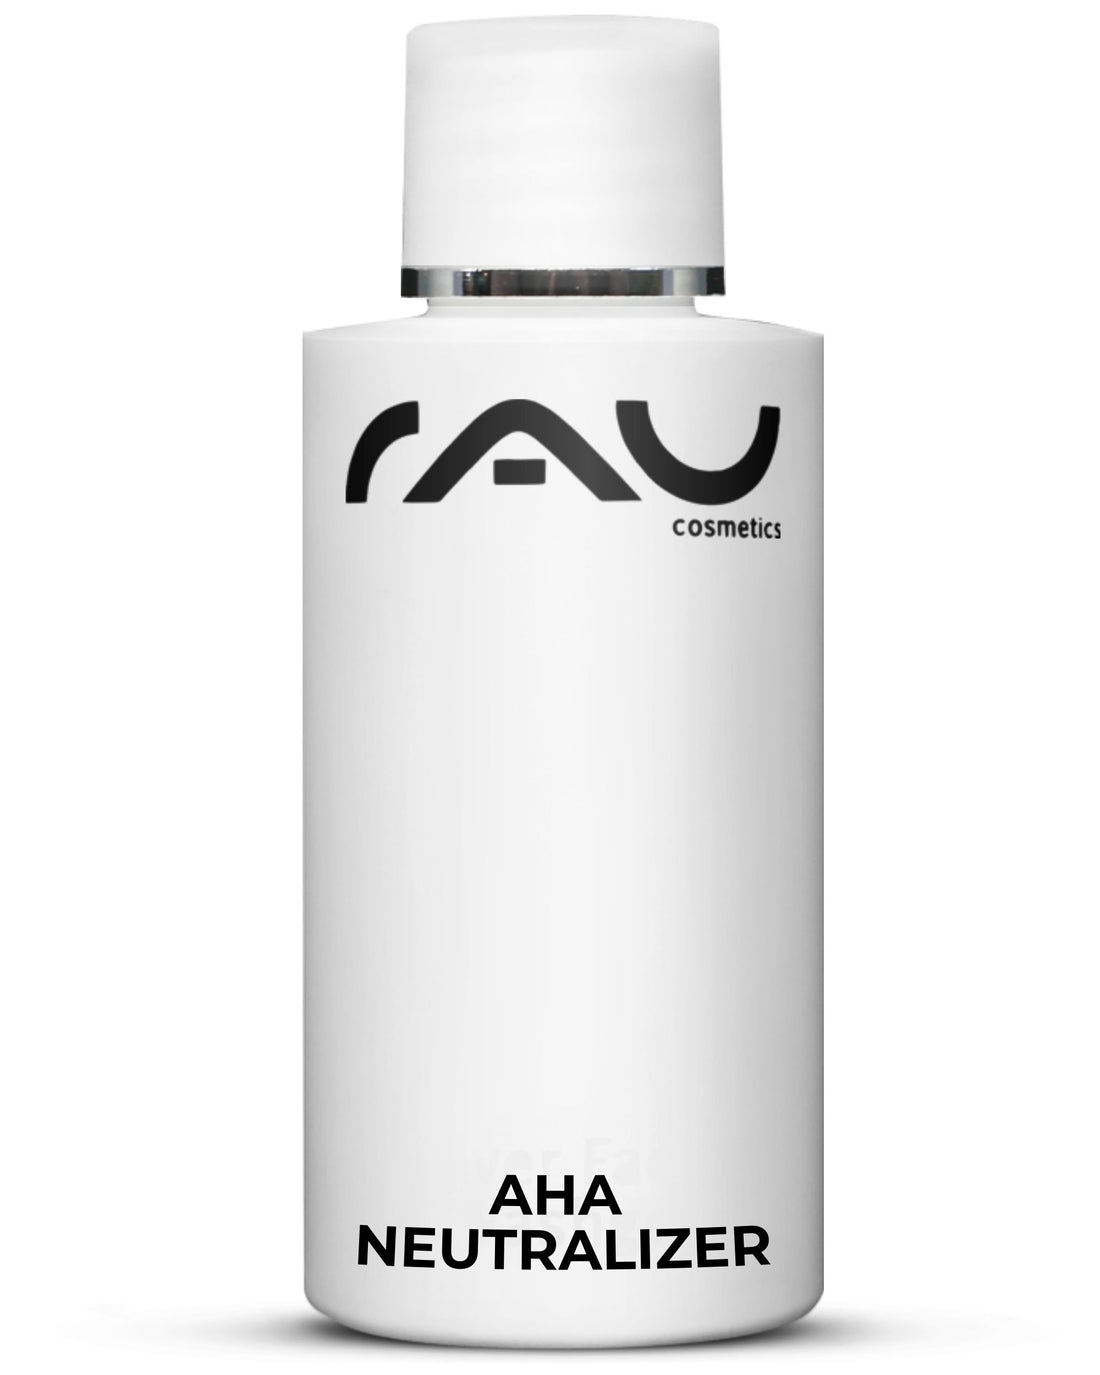 RAU Cosmetics AHA Neutralisator zum neutralisieren von Fruchtsäure auf der Haut